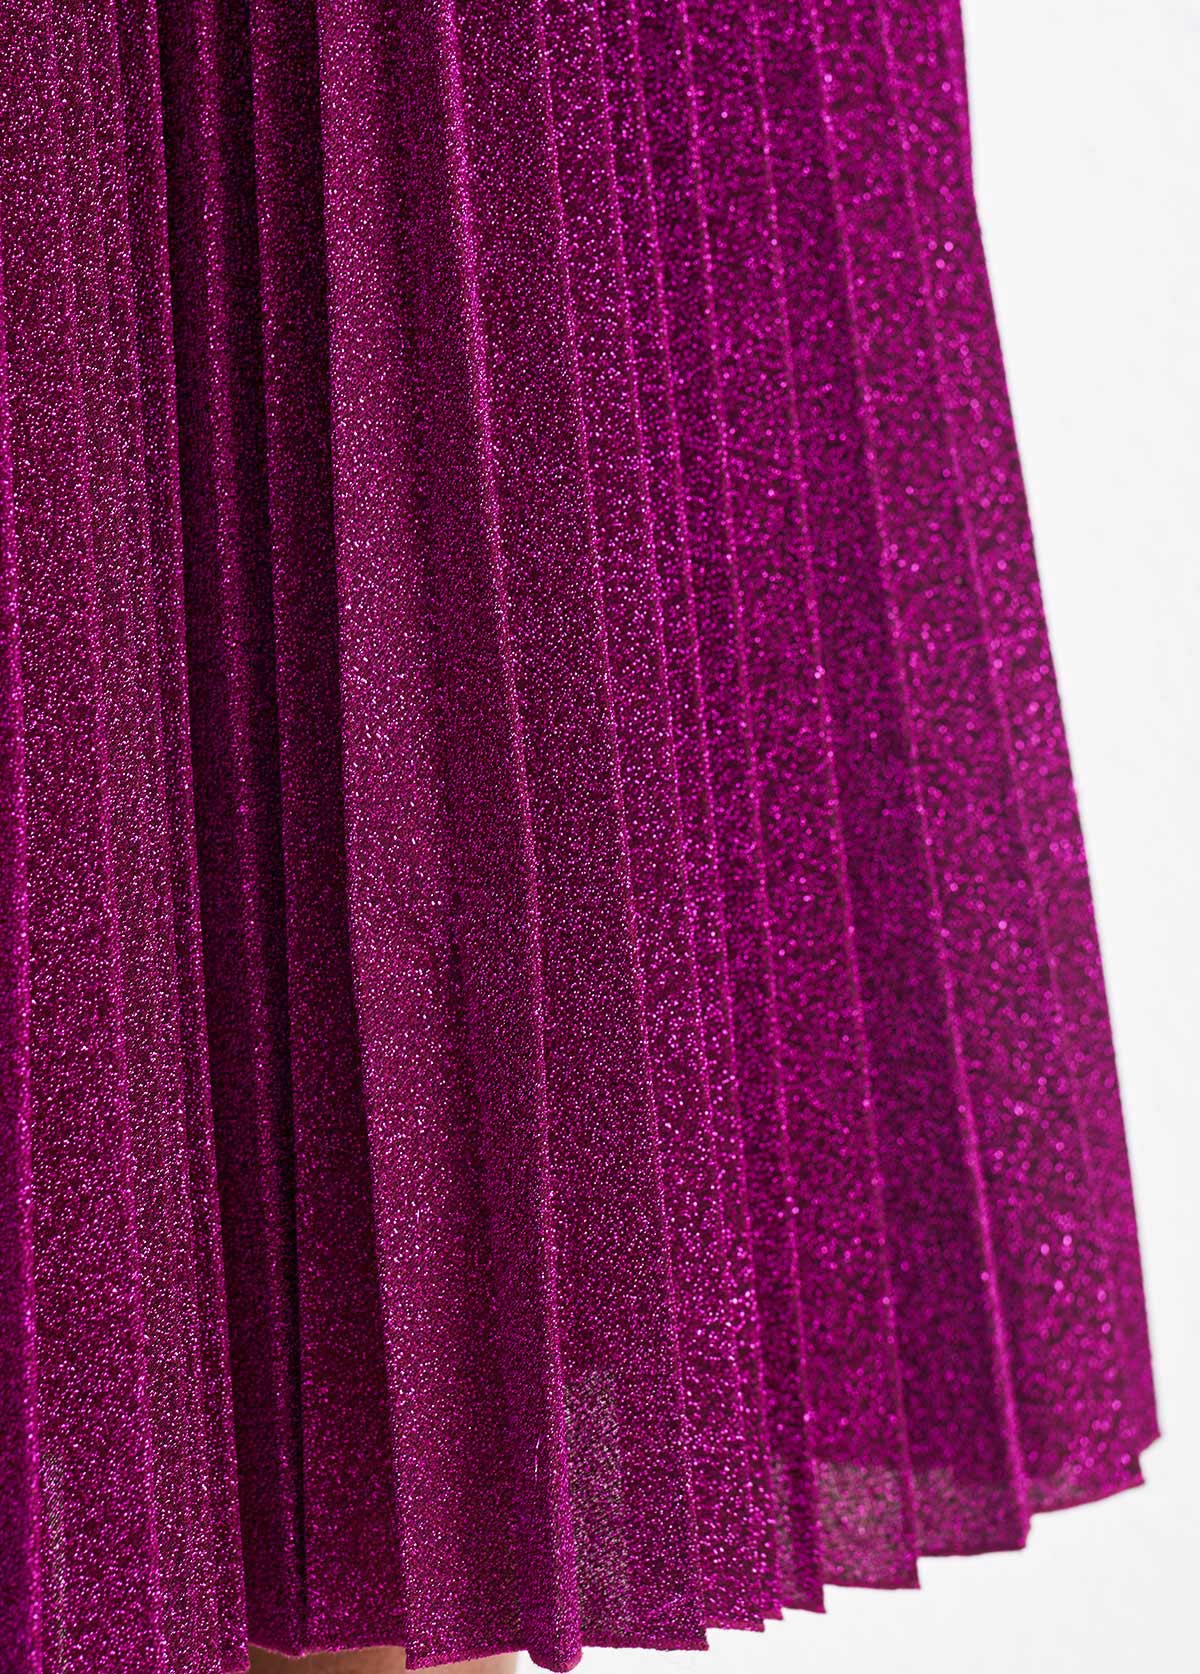 Dark Reddish Purple Pleated Shinning Sleeveless Round Neck Dress